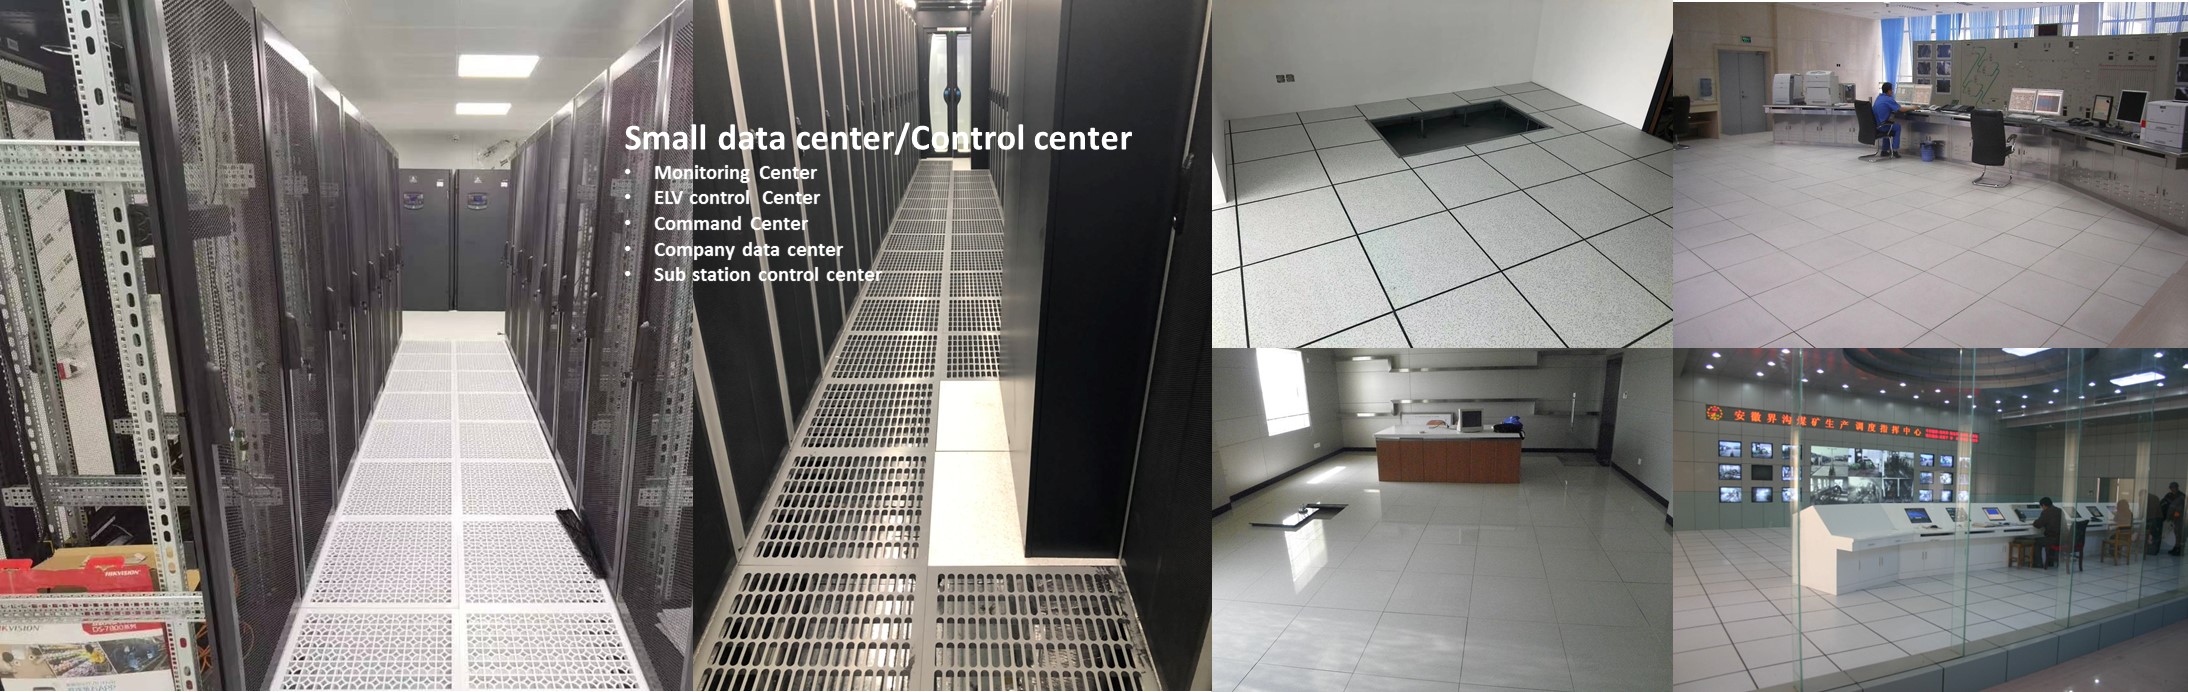 Control center raised floor